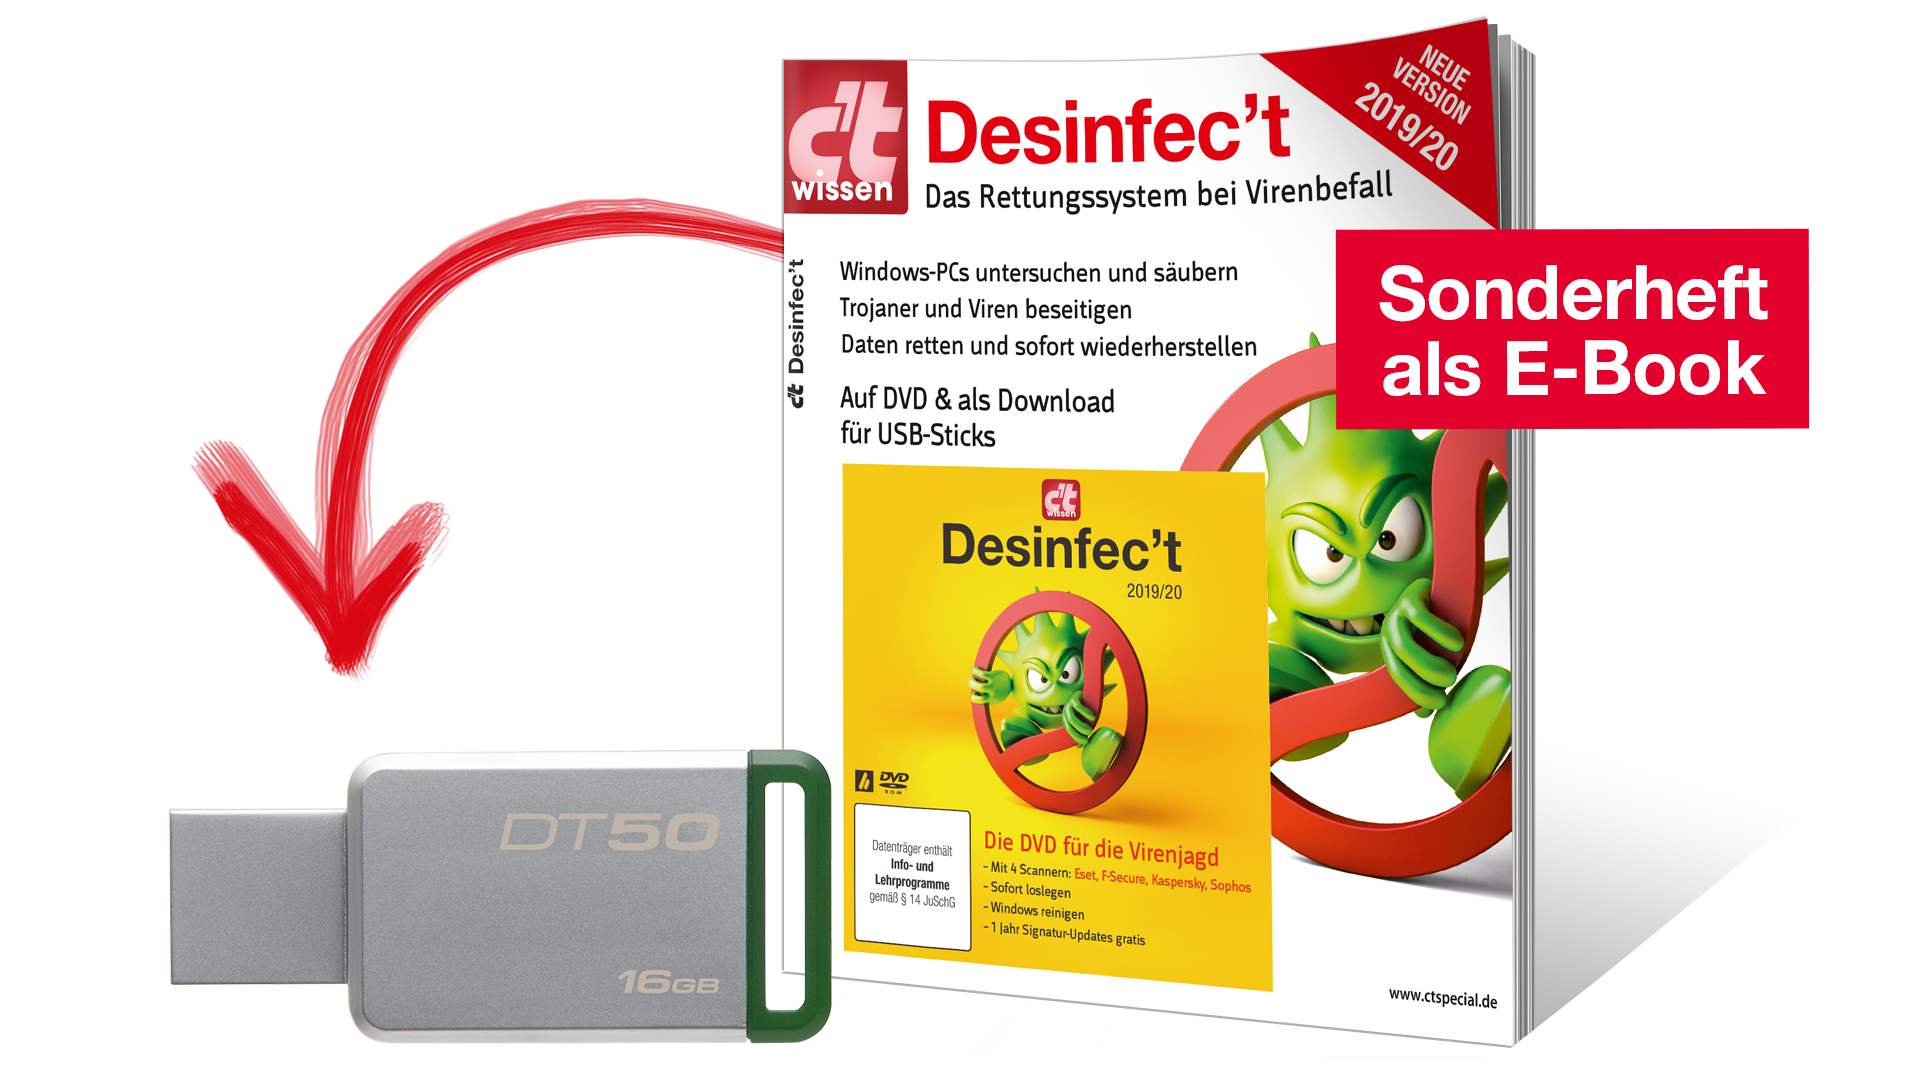 Jetzt erhältlich: USB-Stick mit Desinfec't 2019/20 | heise online